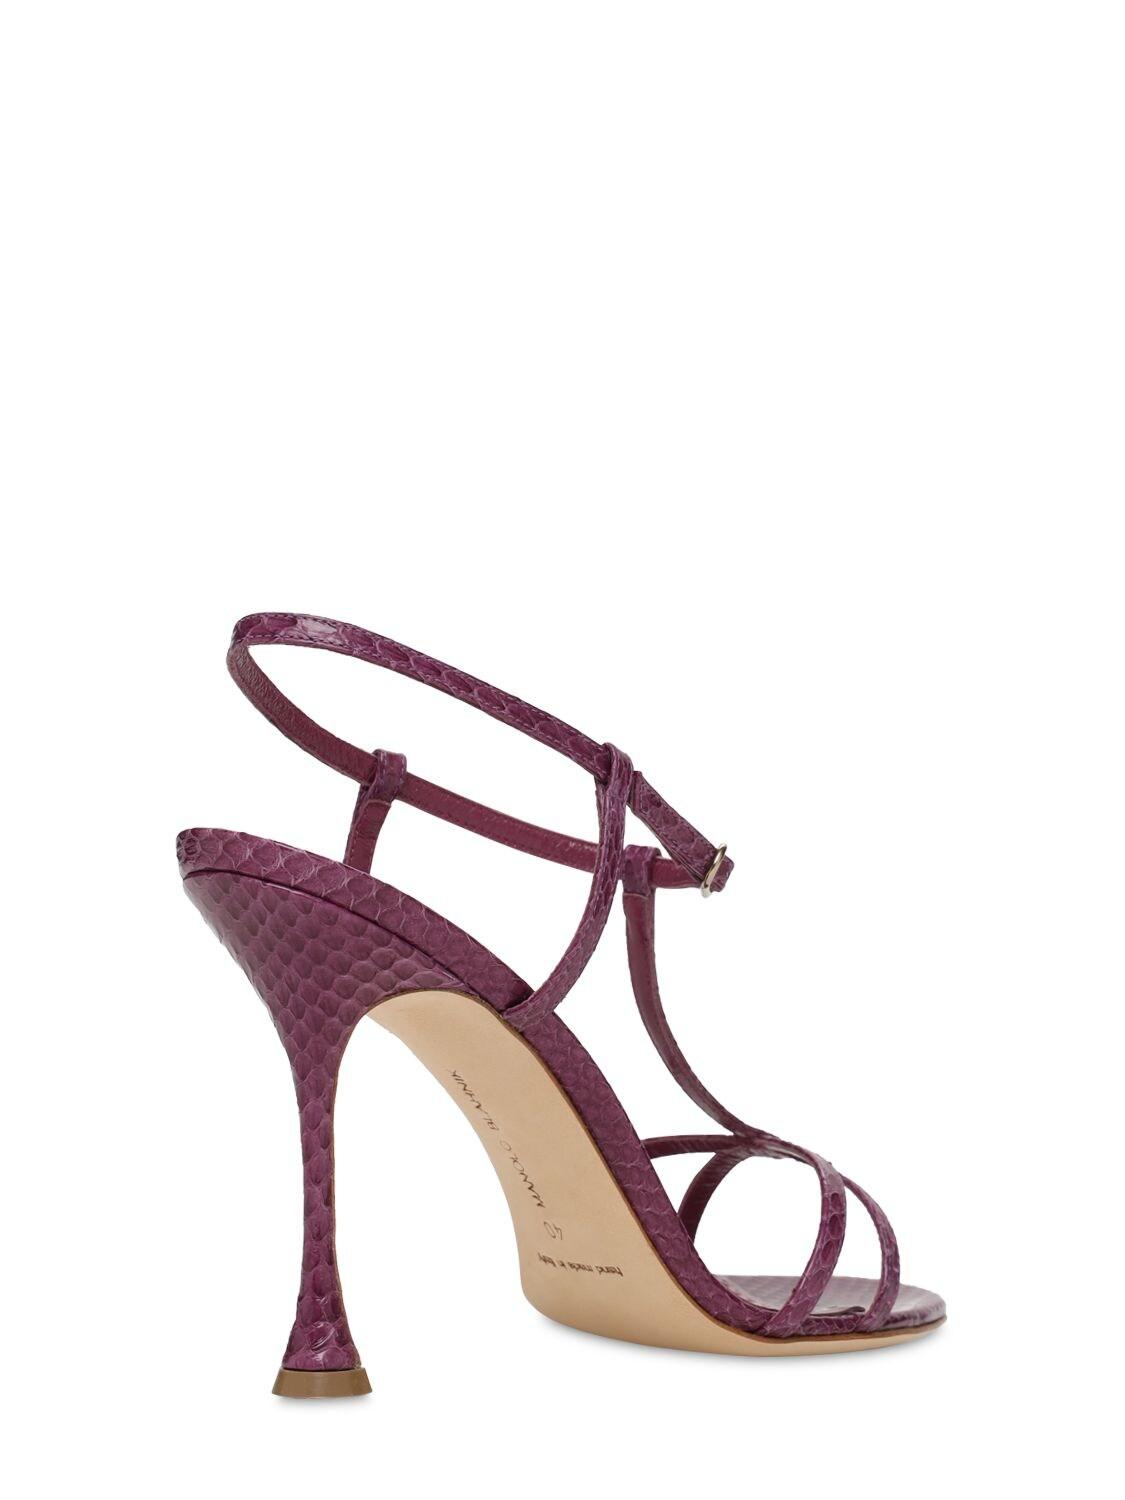 Manolo Blahnik 105mm Raqui Snakeskin Sandals in Purple | Lyst